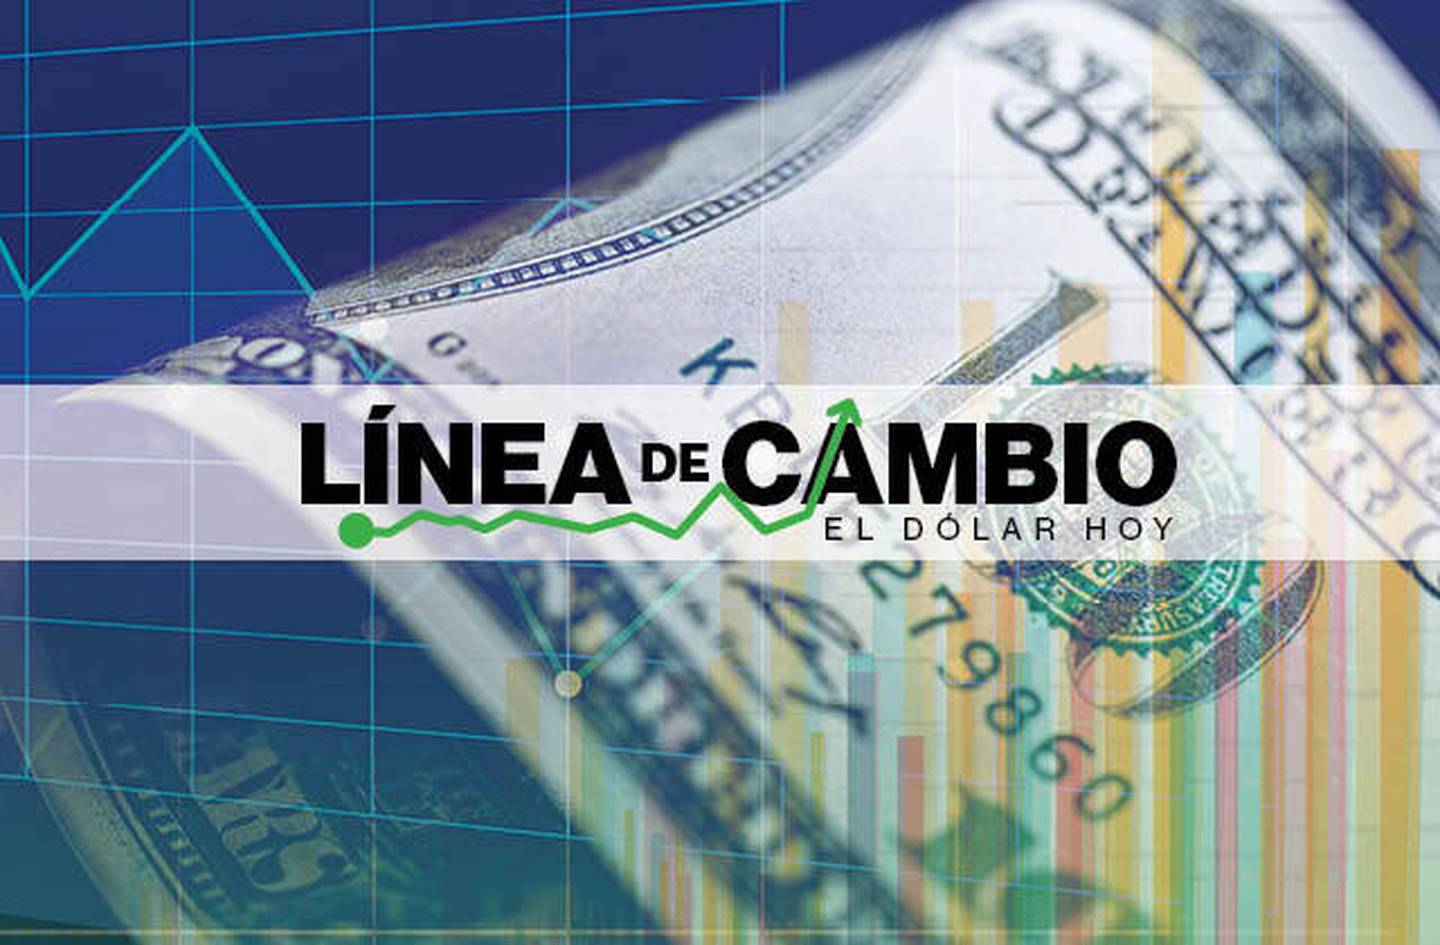 Dólar hoy: Peso de Uruguay sigue al alza mientras el peso chileno cae más de 1%.